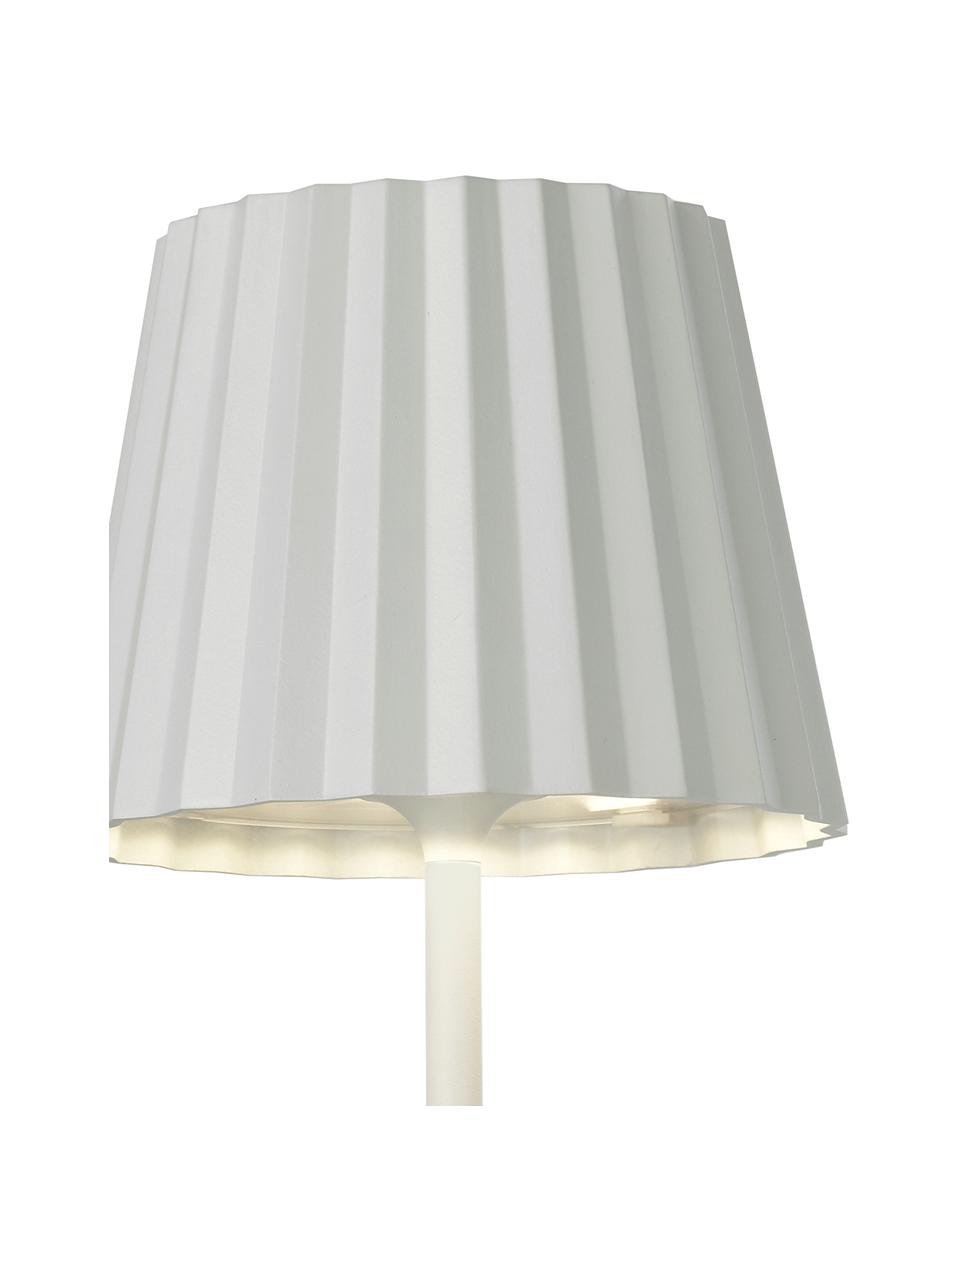 Mobile Dimmbare Außentischlampe Trellia, Lampenschirm: Aluminium, lackiert, Lampenfuß: Aluminium, lackiert, Weiß, Ø 12 x H 38 cm